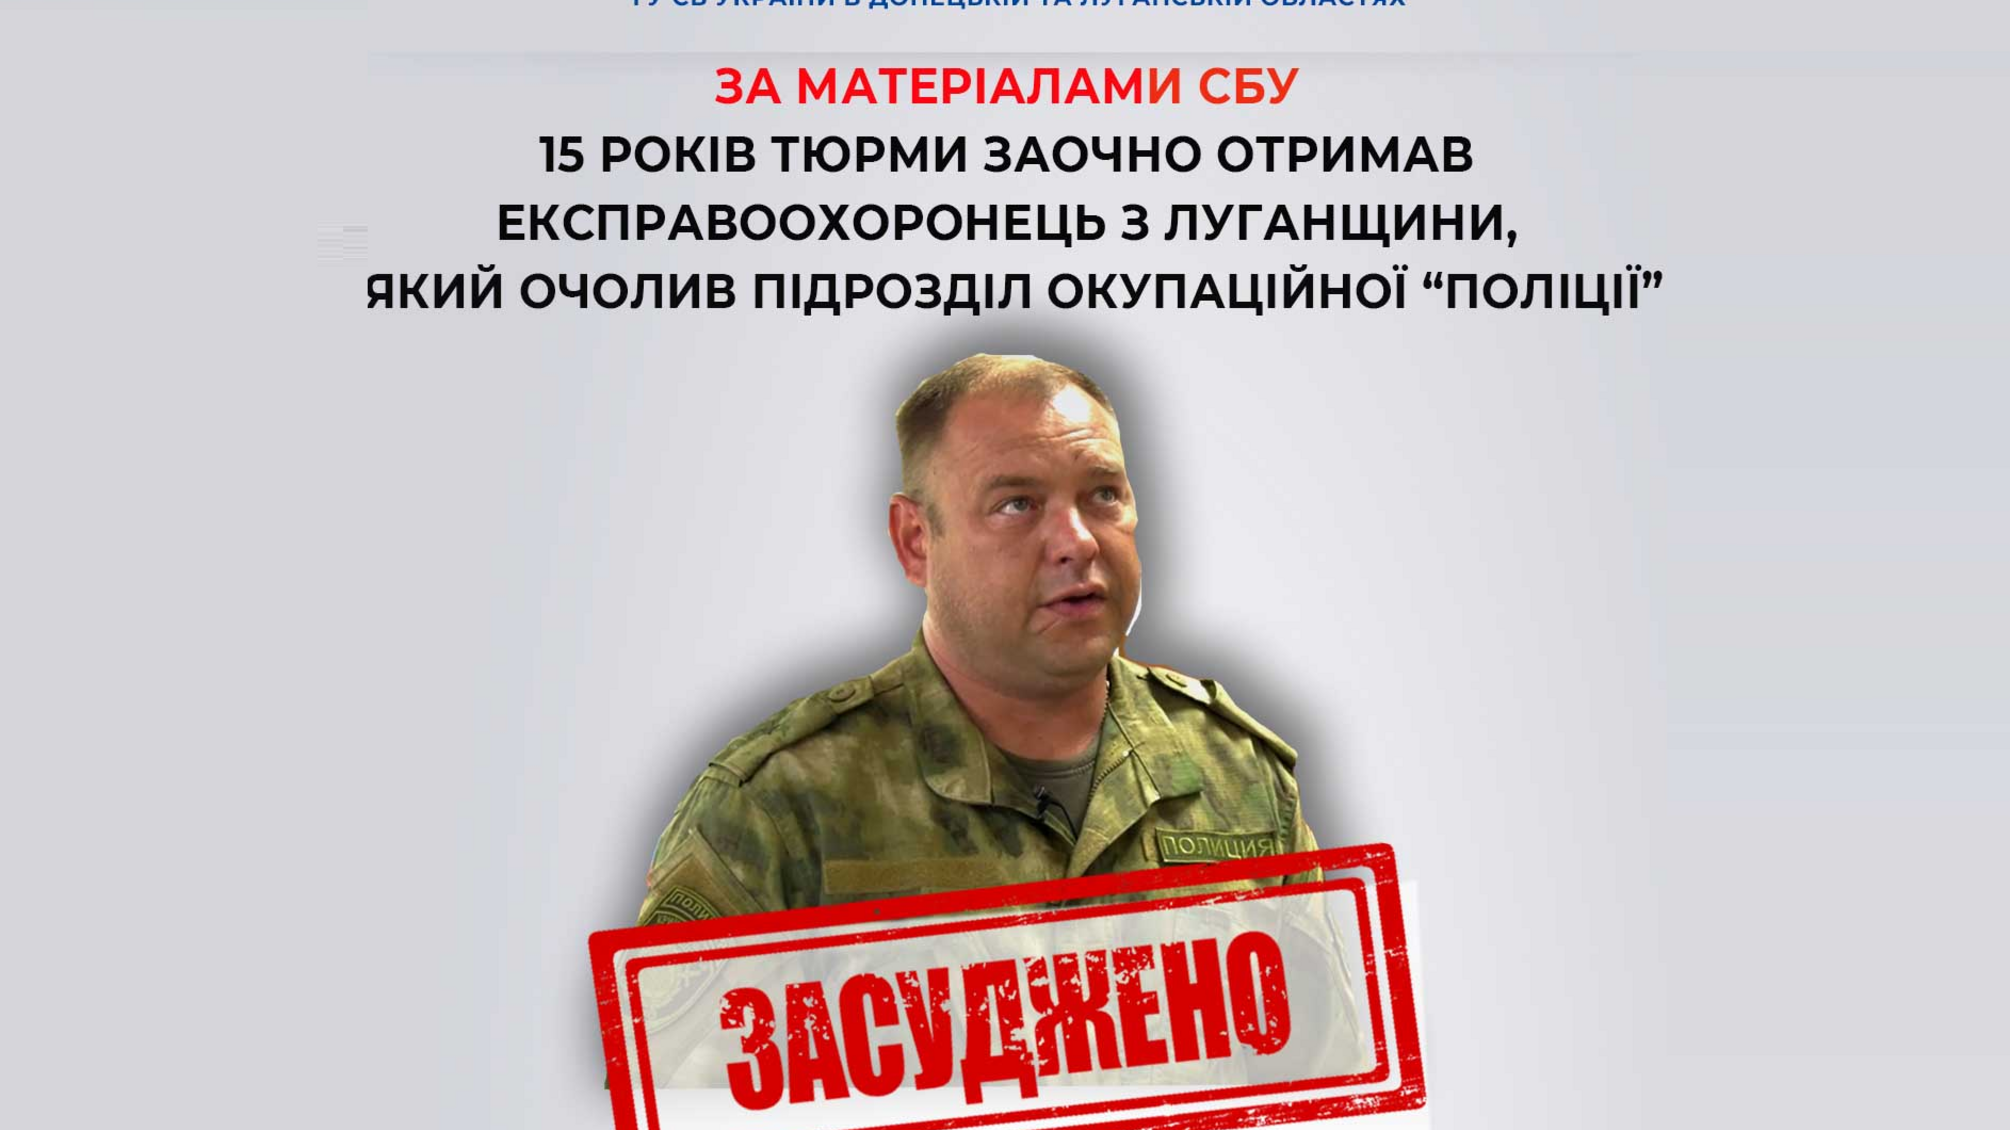 Экс-правоохранителя, возглавившего подразделение оккупационной 'полиции' в Луганской области, осудили на 15 лет заочно